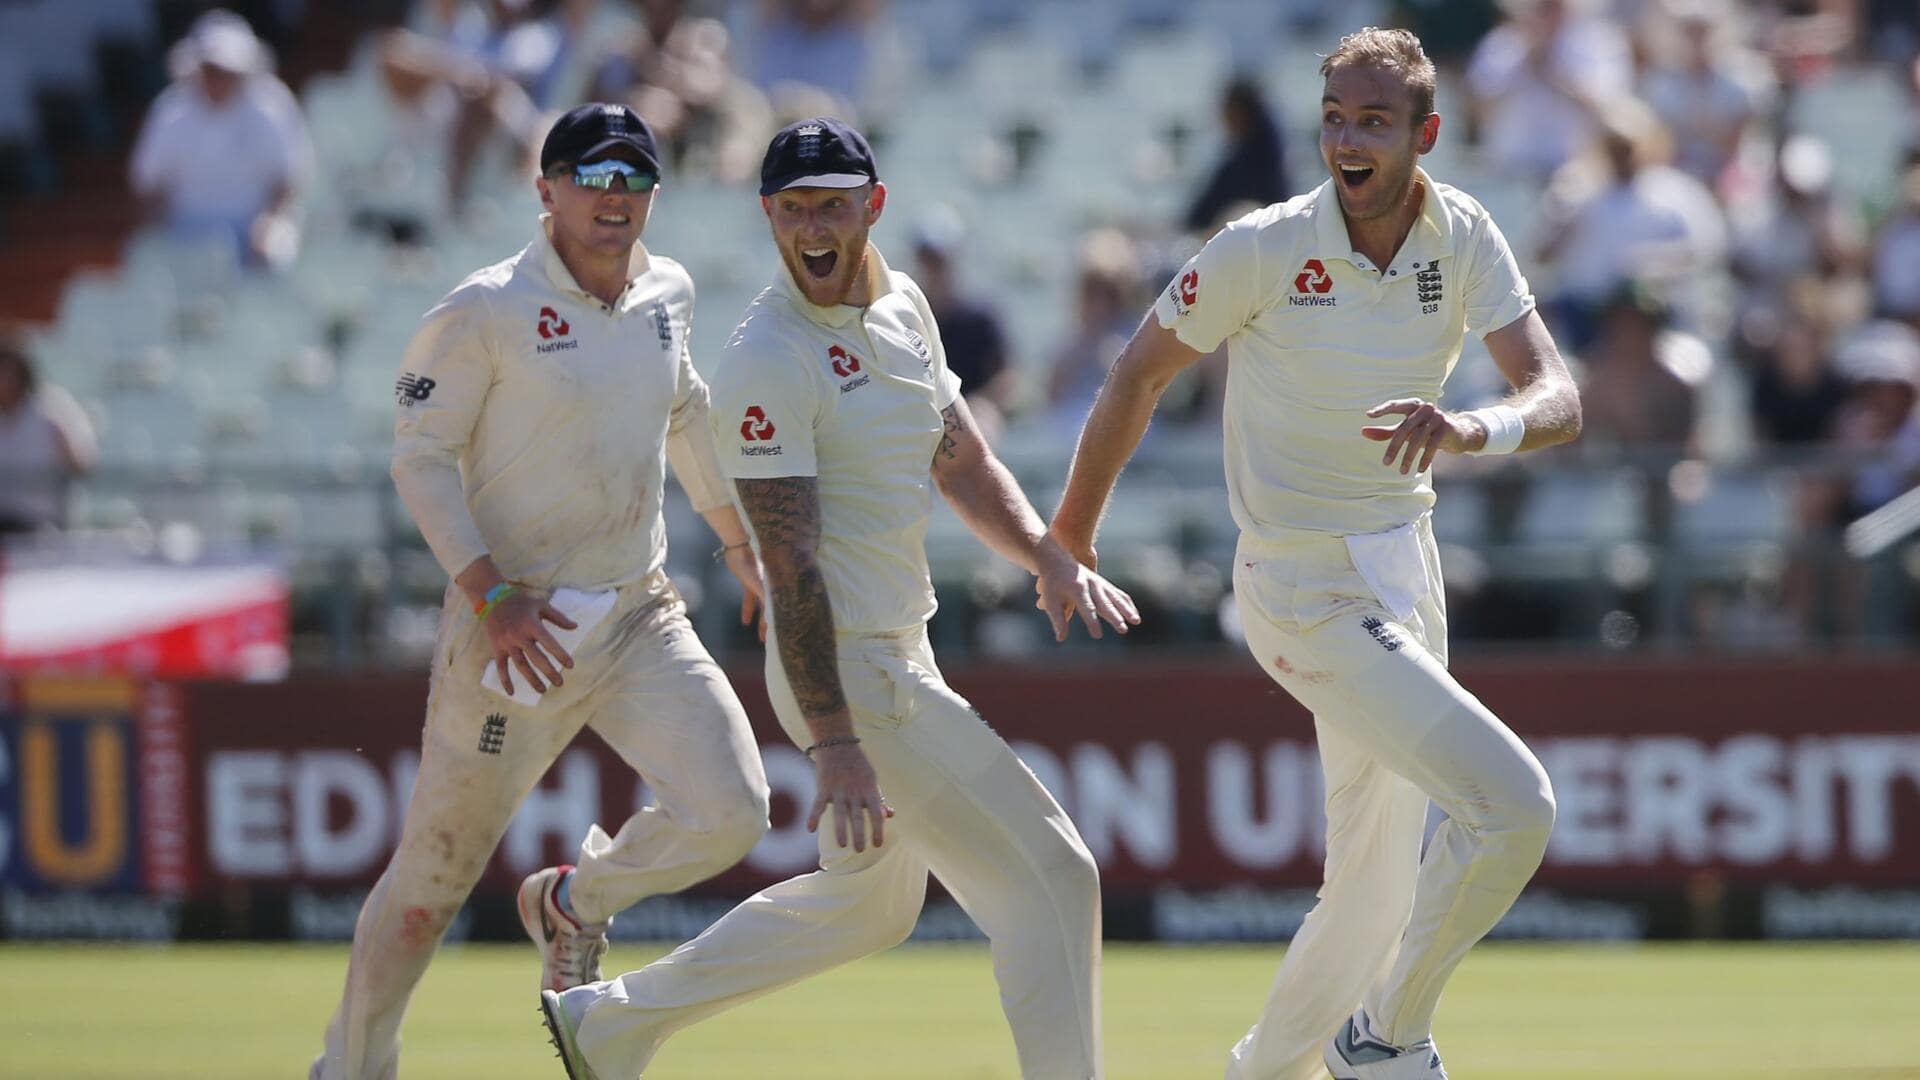 इंग्लैंड बनाम आयरलैंड: जानिए इकलौते टेस्ट के लिए दोनों टीमें और अन्य अहम जानकारी 